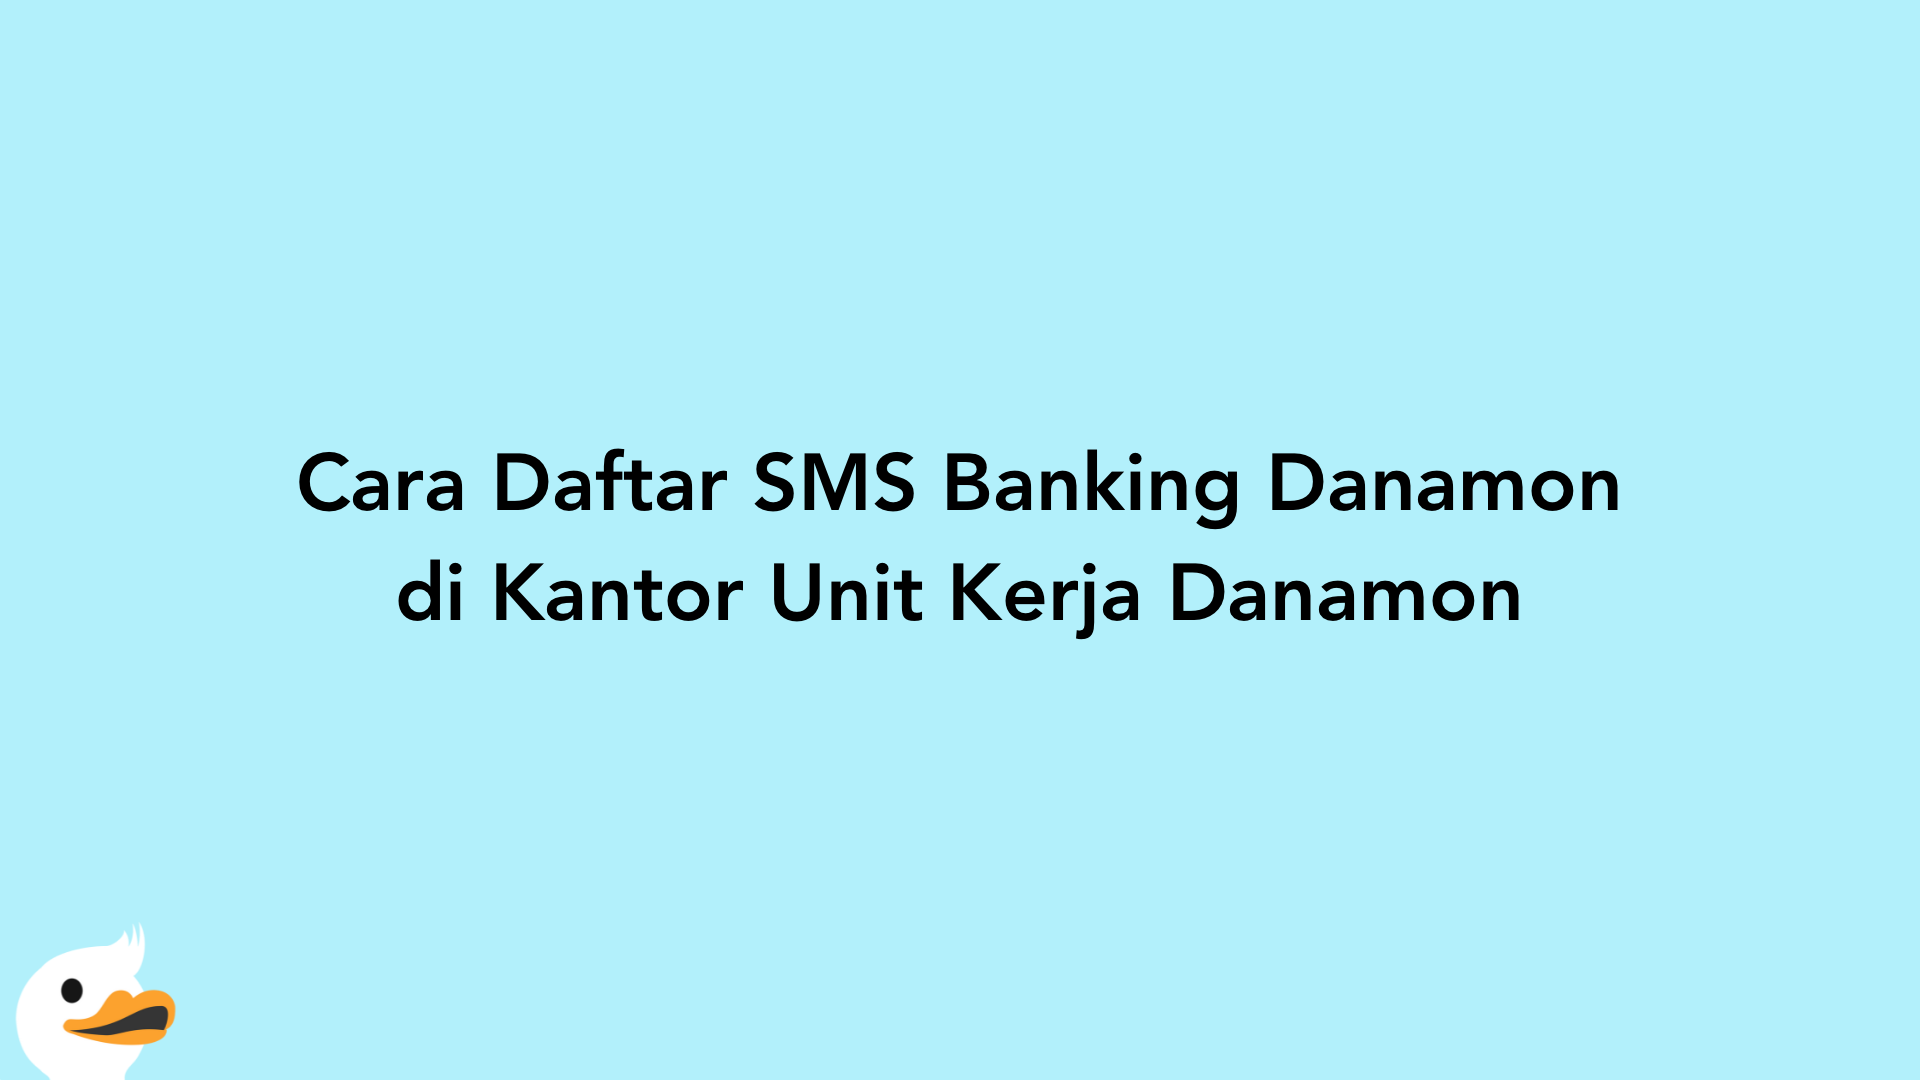 Cara Daftar SMS Banking Danamon di Kantor Unit Kerja Danamon